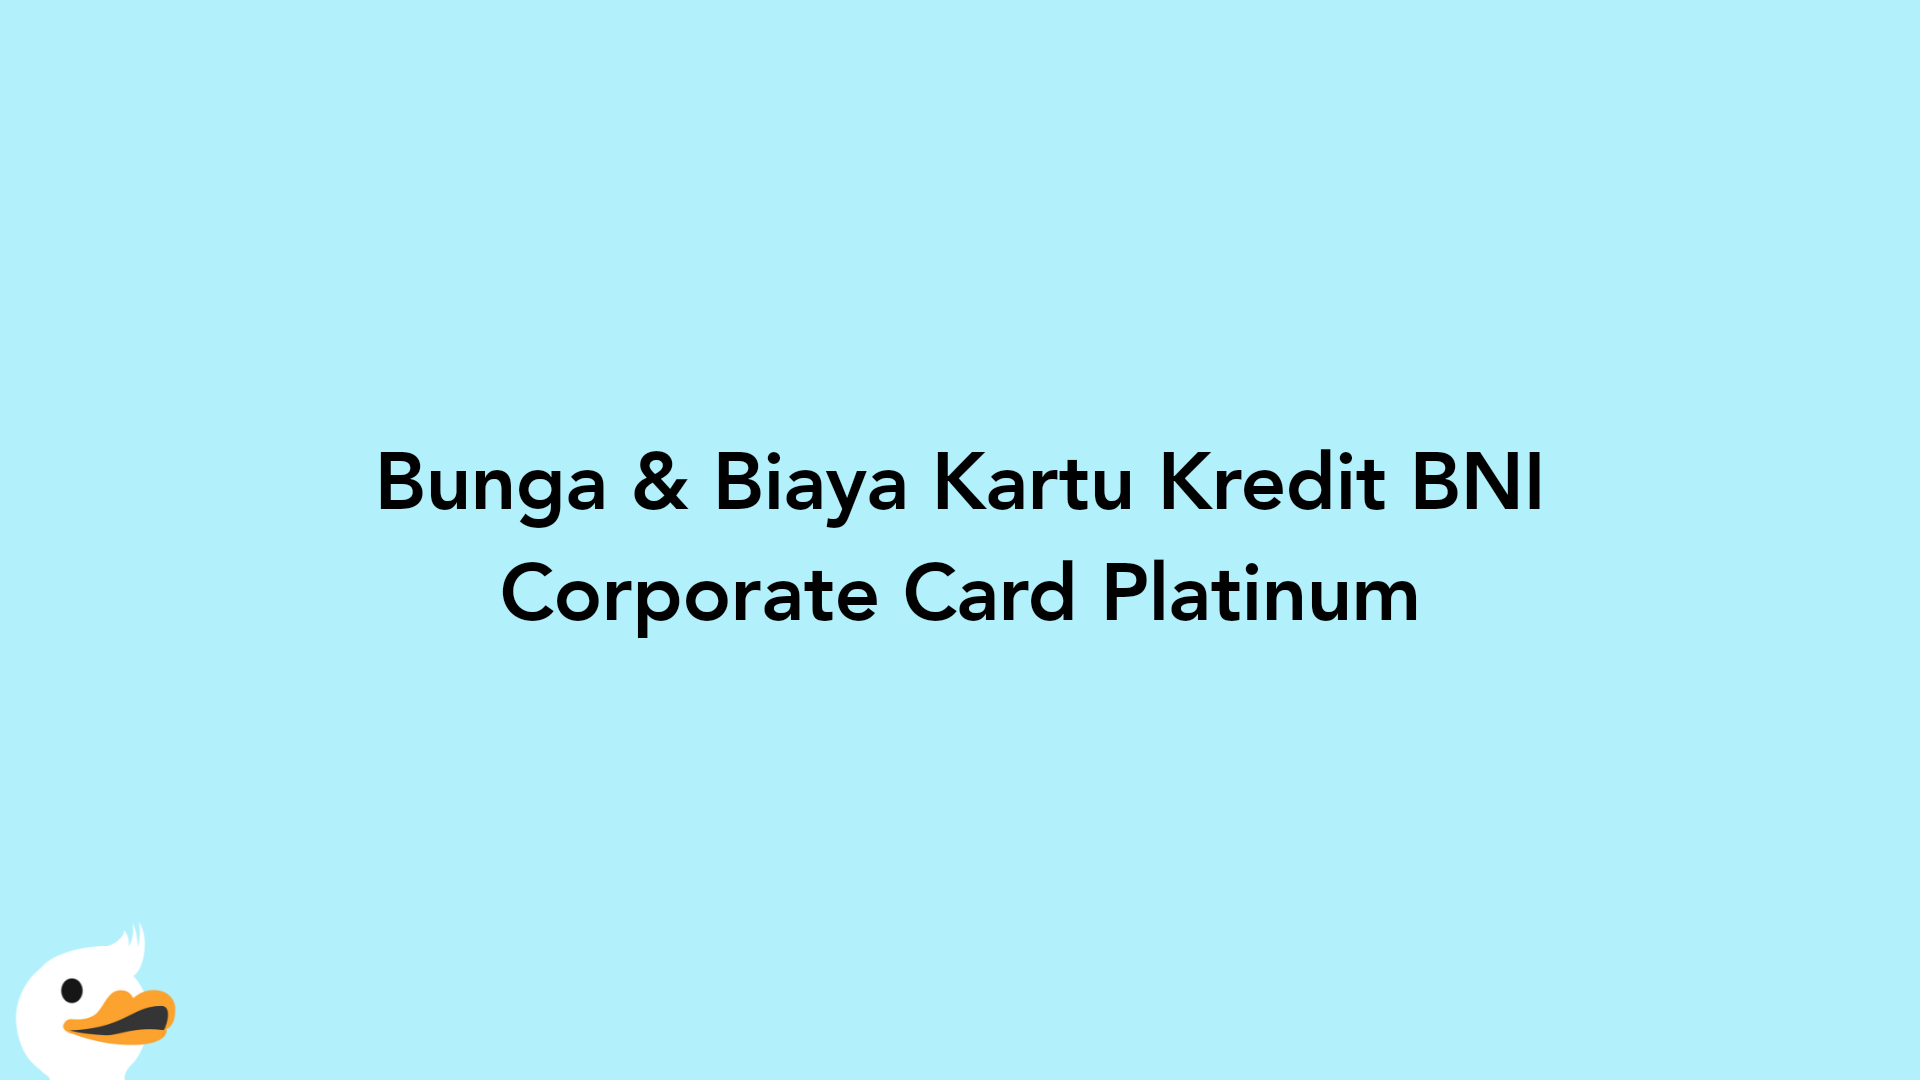 Bunga & Biaya Kartu Kredit BNI Corporate Card Platinum